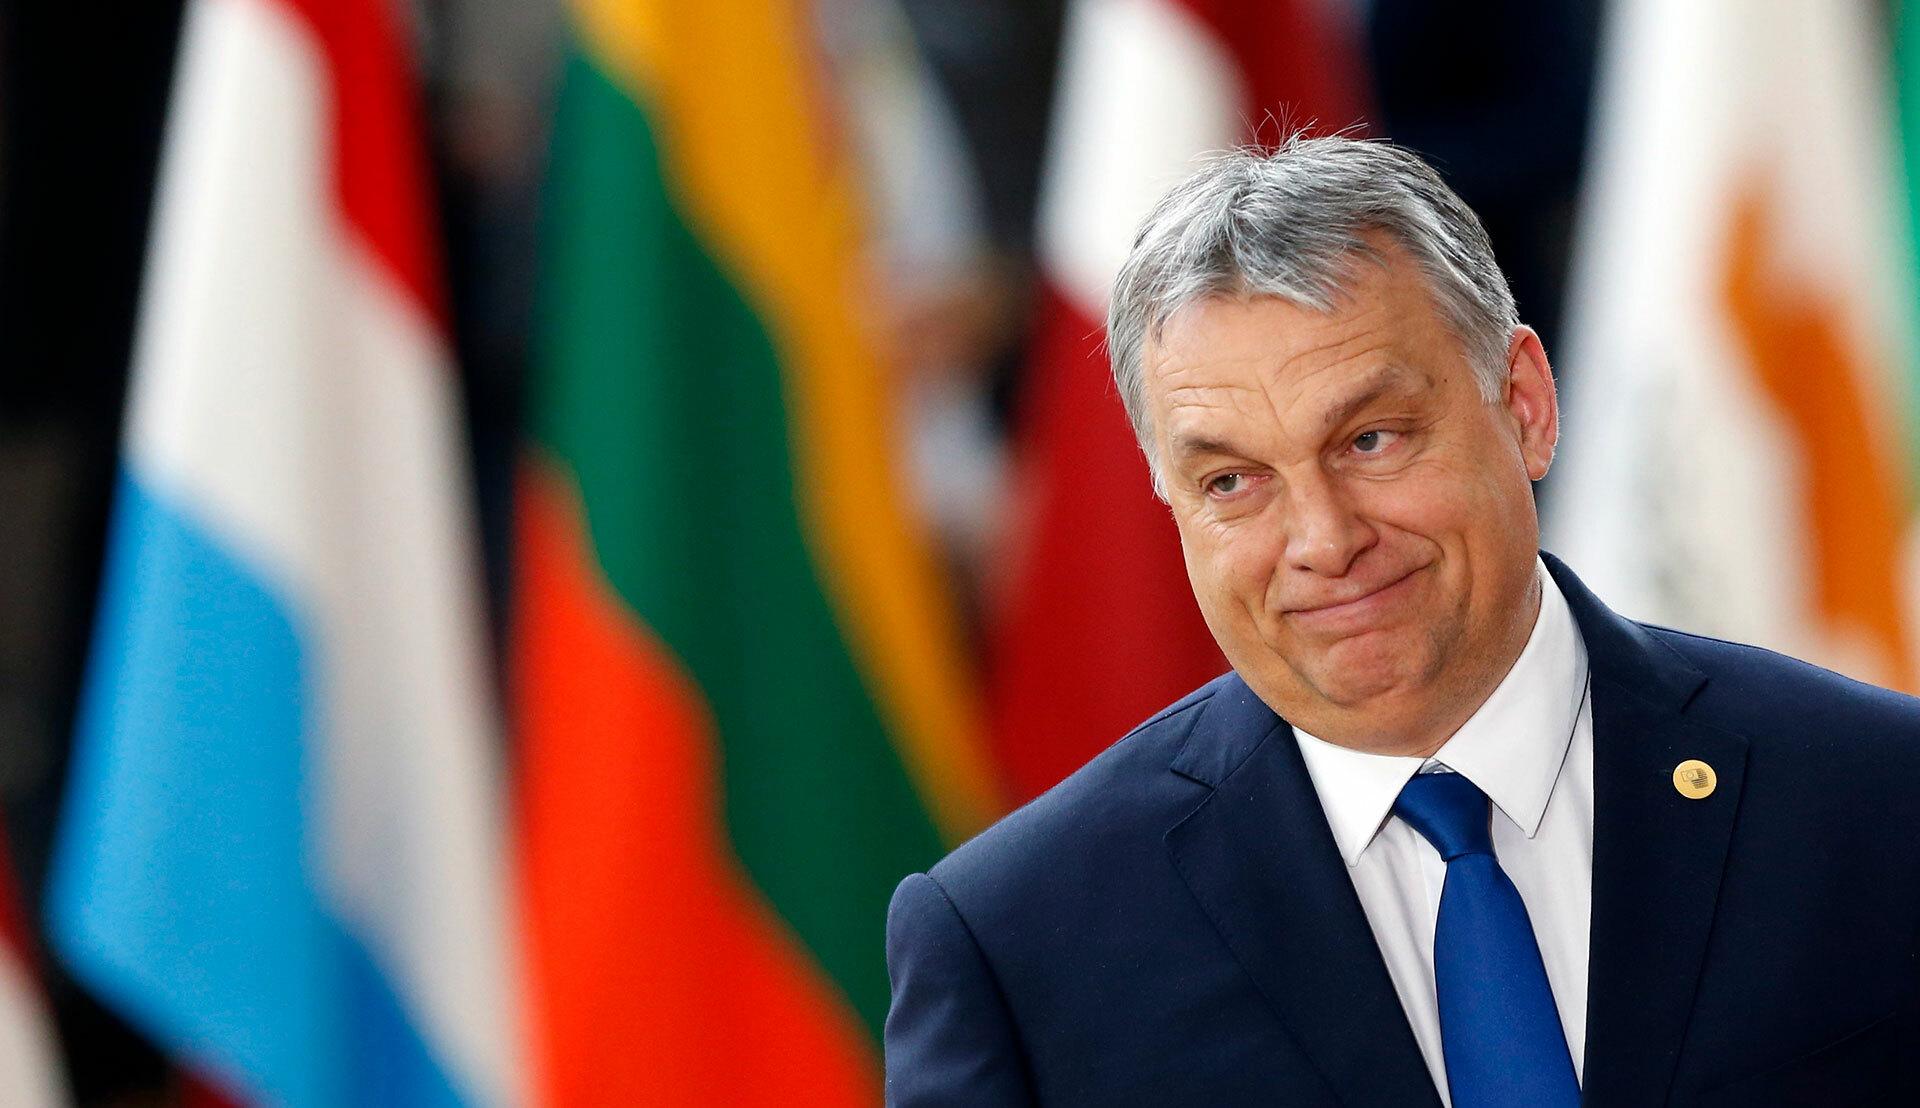 Sme spojení so slovenskou tajnou službou, máme informácie o atentáte na Fica, tvrdí Orbán